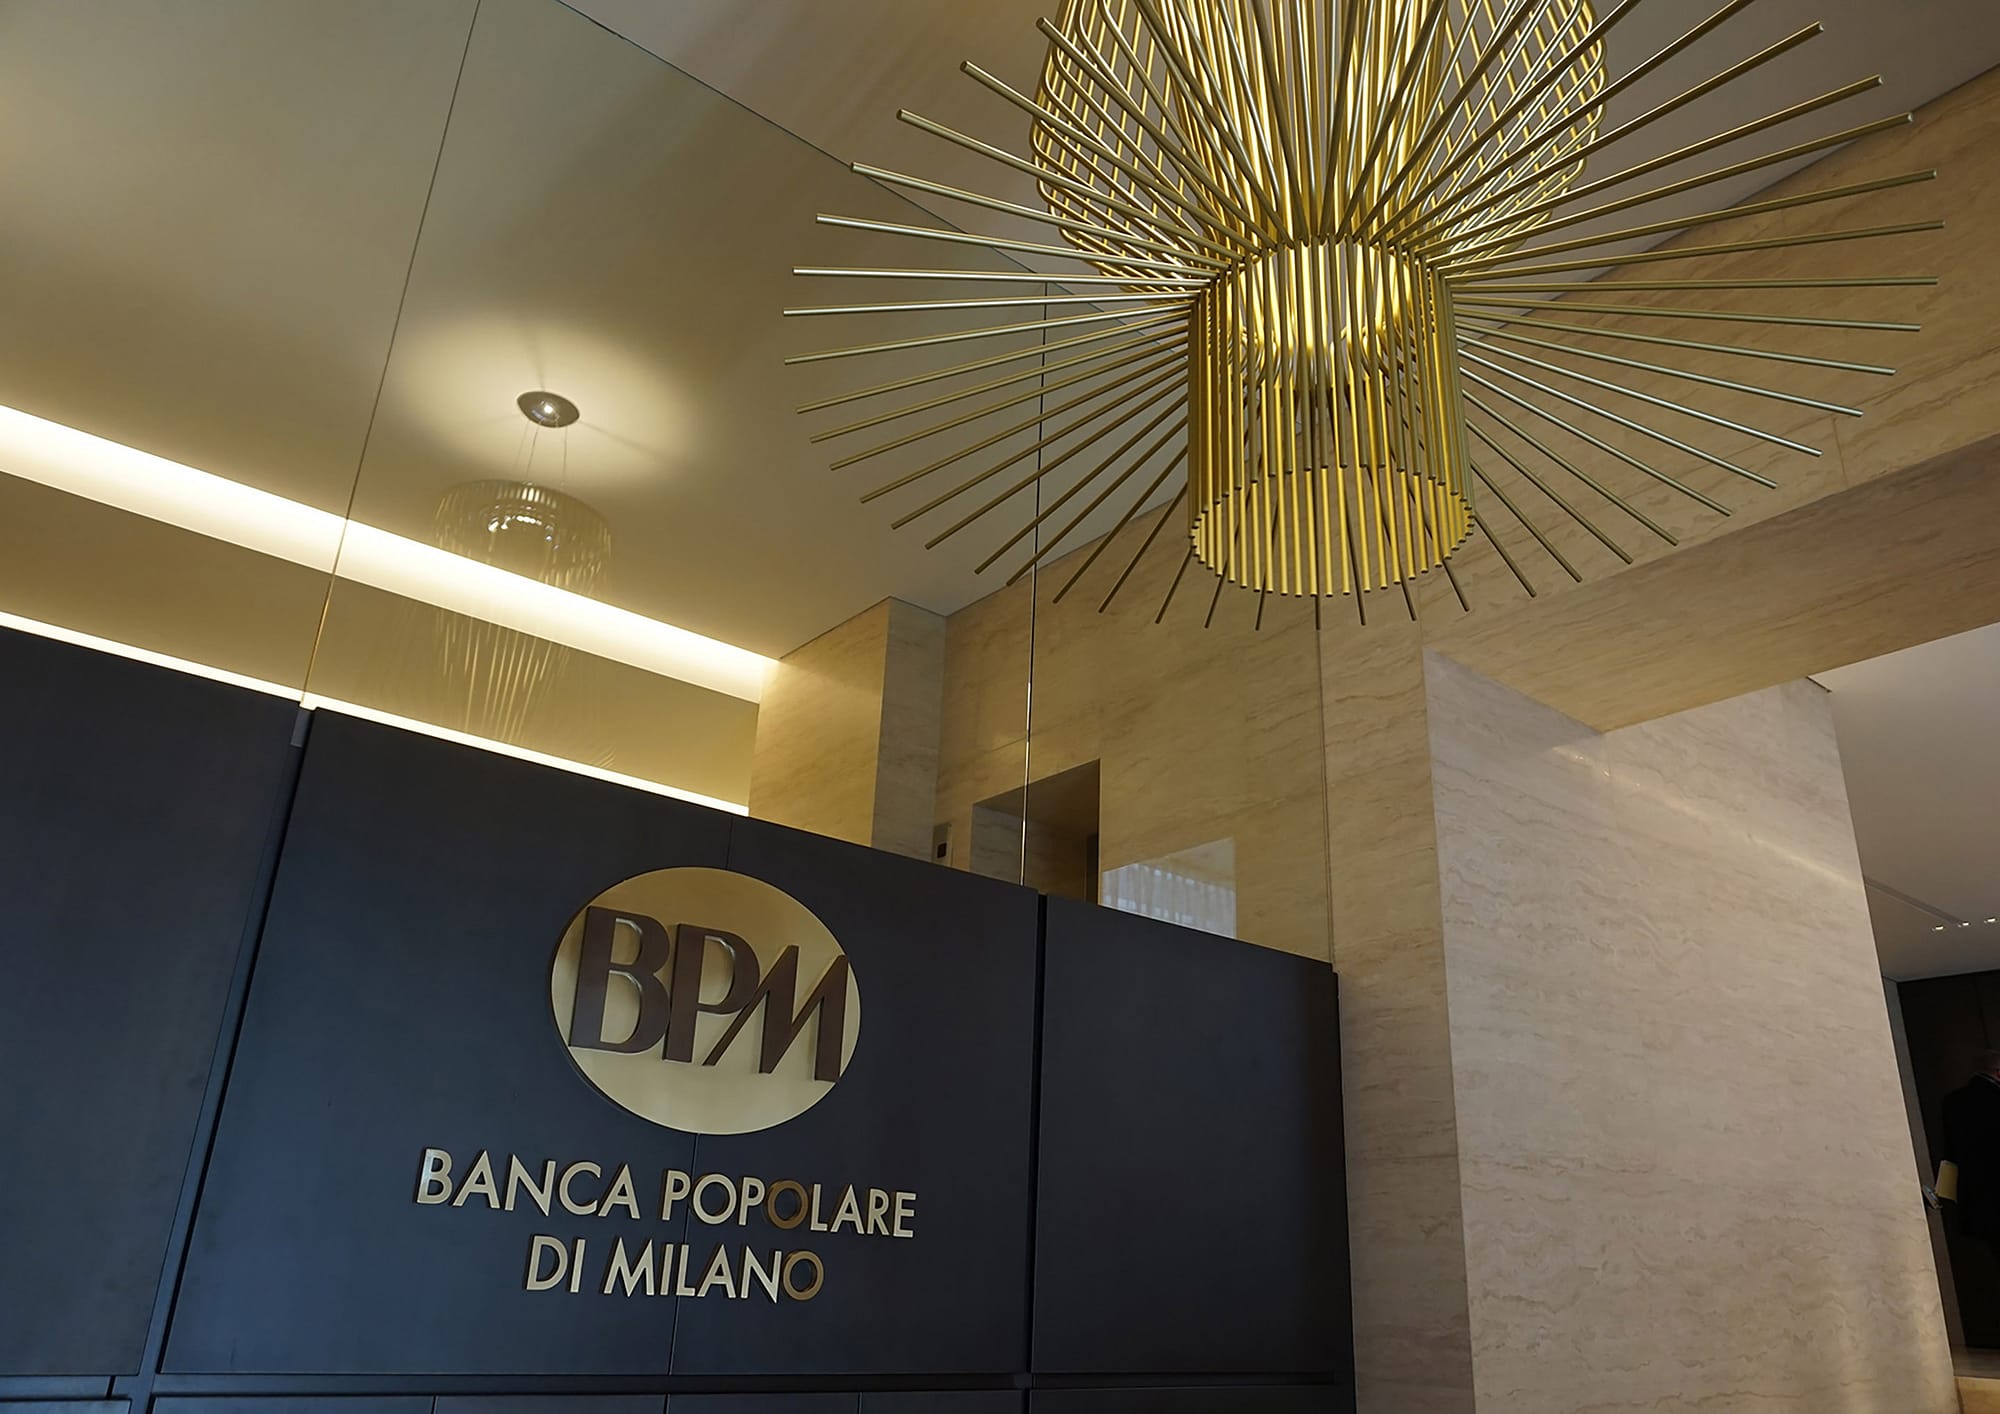 Banco BPM Foyer, vista su ingresso con dettaglio su marchio e lampadario